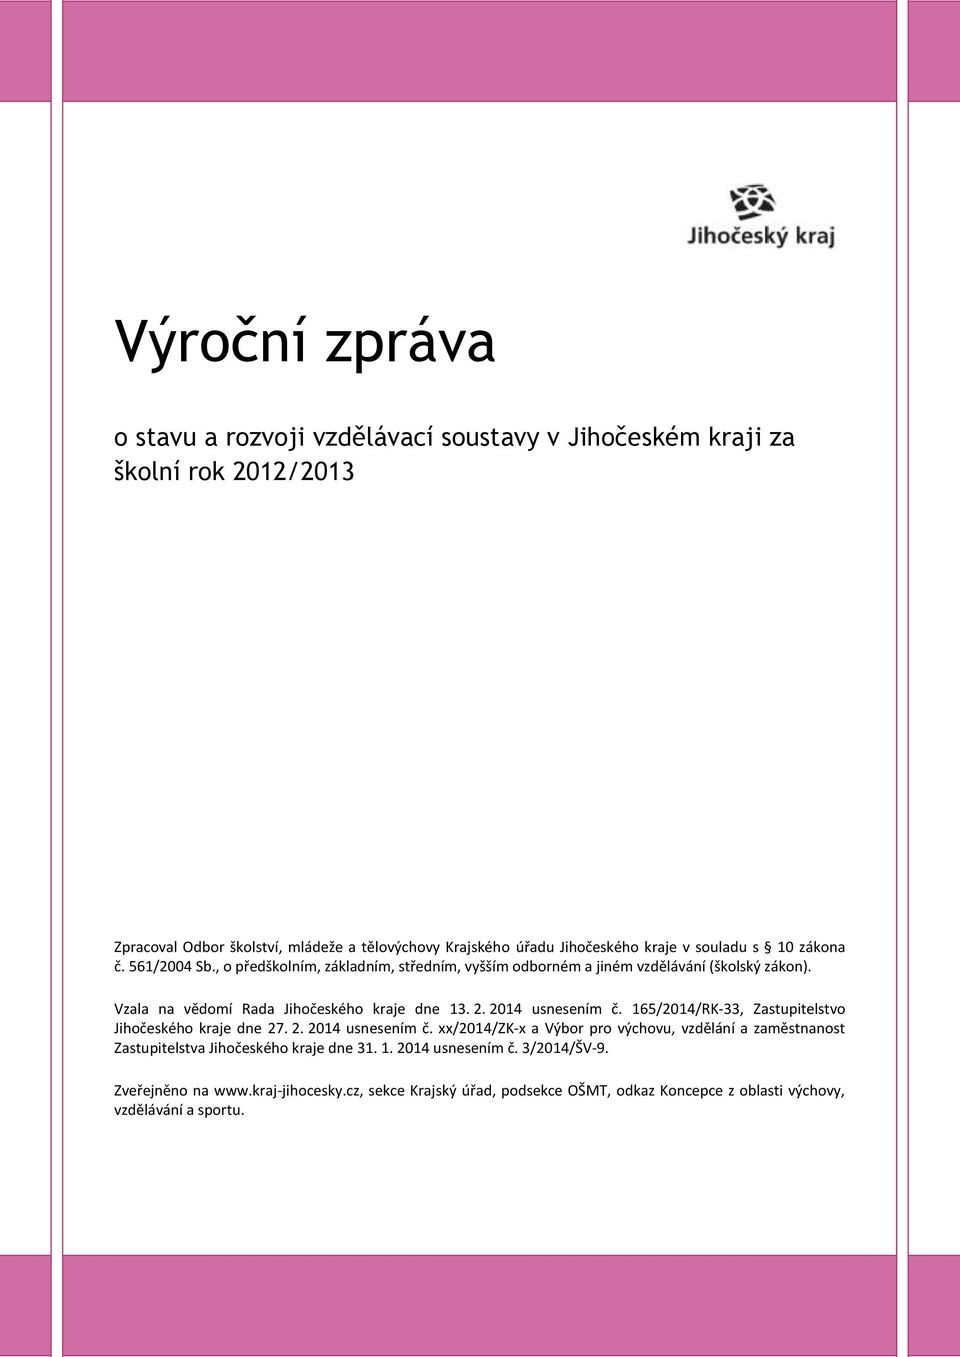 2014 usnesením č. 165/2014/RK-33, Zastupitelstvo Jihočeského kraje dne 27. 2. 2014 usnesením č.